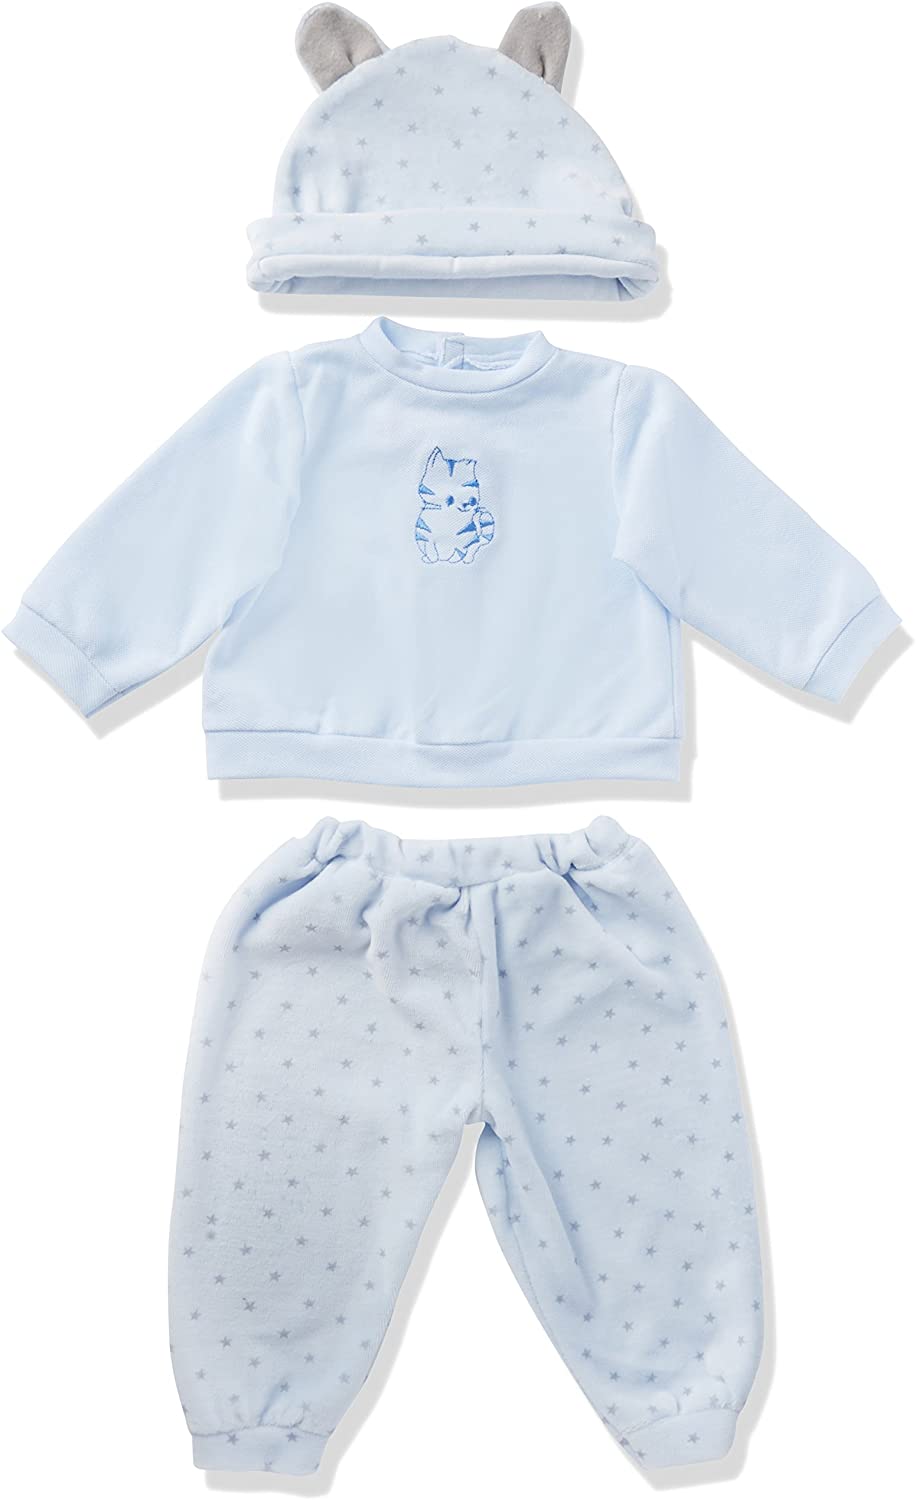 Paola Reina 58753 - Pyjama-Anzug am Handgelenk für Puppe, Blau, 60 cm